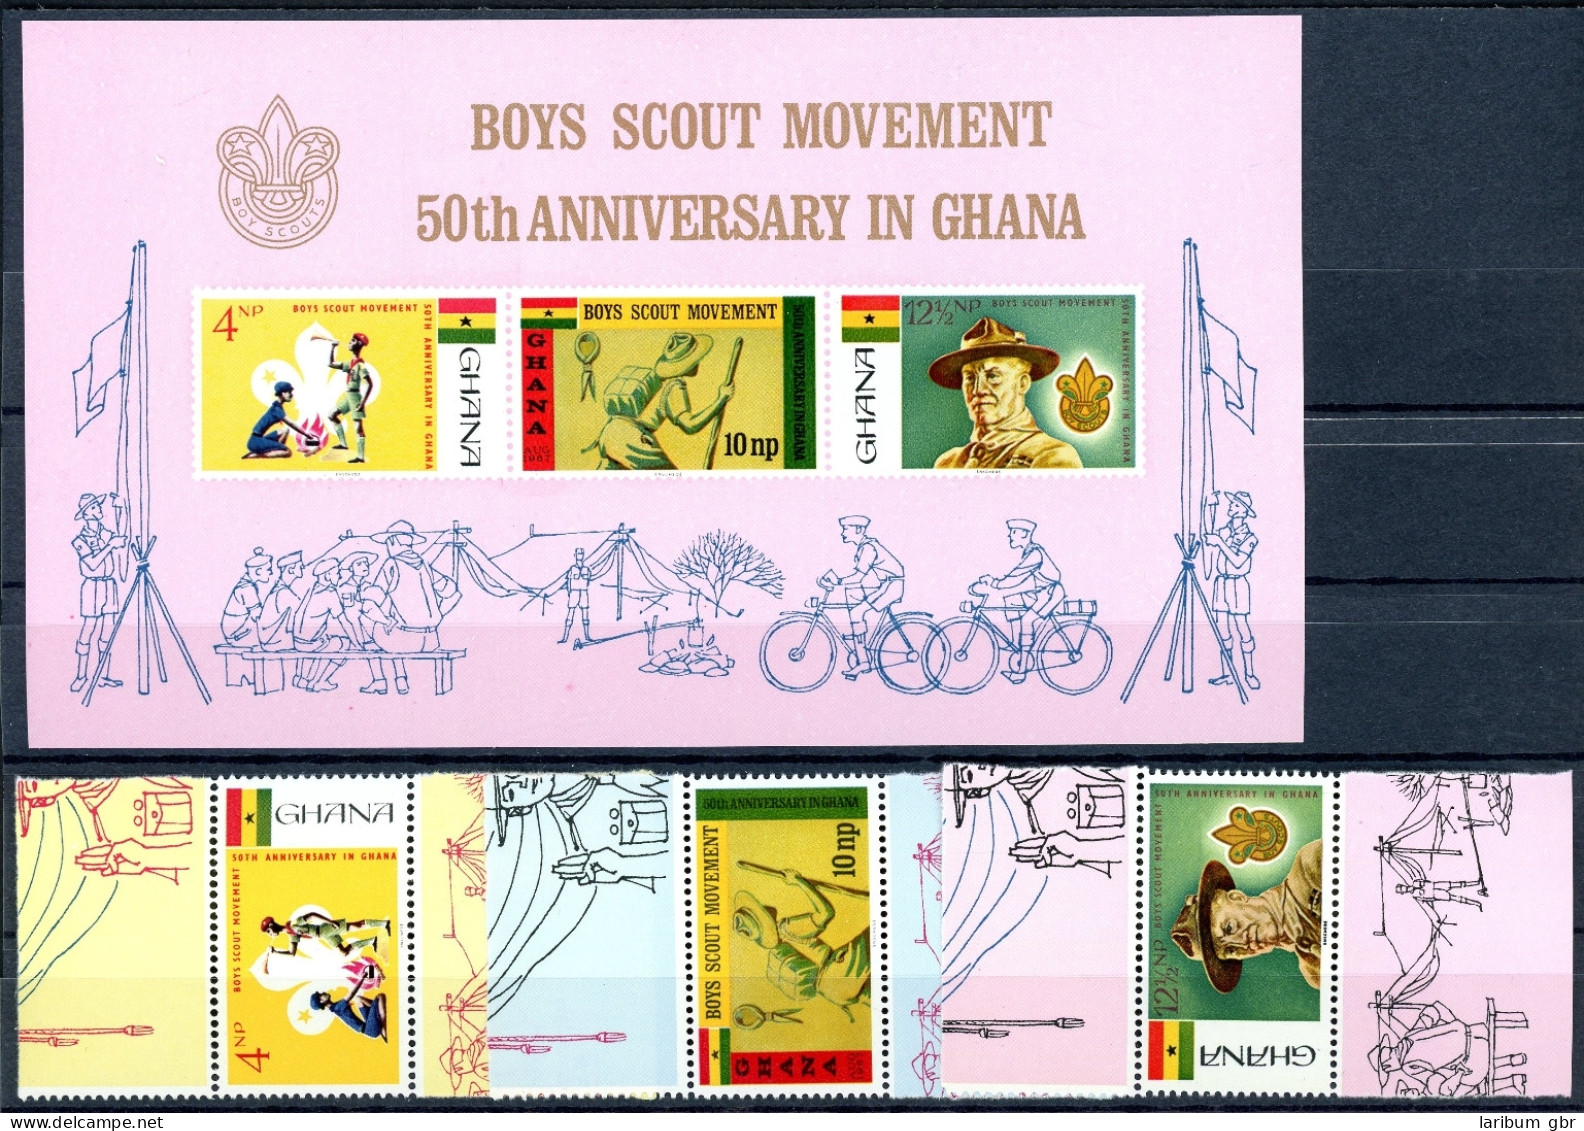 Ghana 31-21 A + Block 27 Postfrisch Pfadfinder #HO409 - Ghana (1957-...)